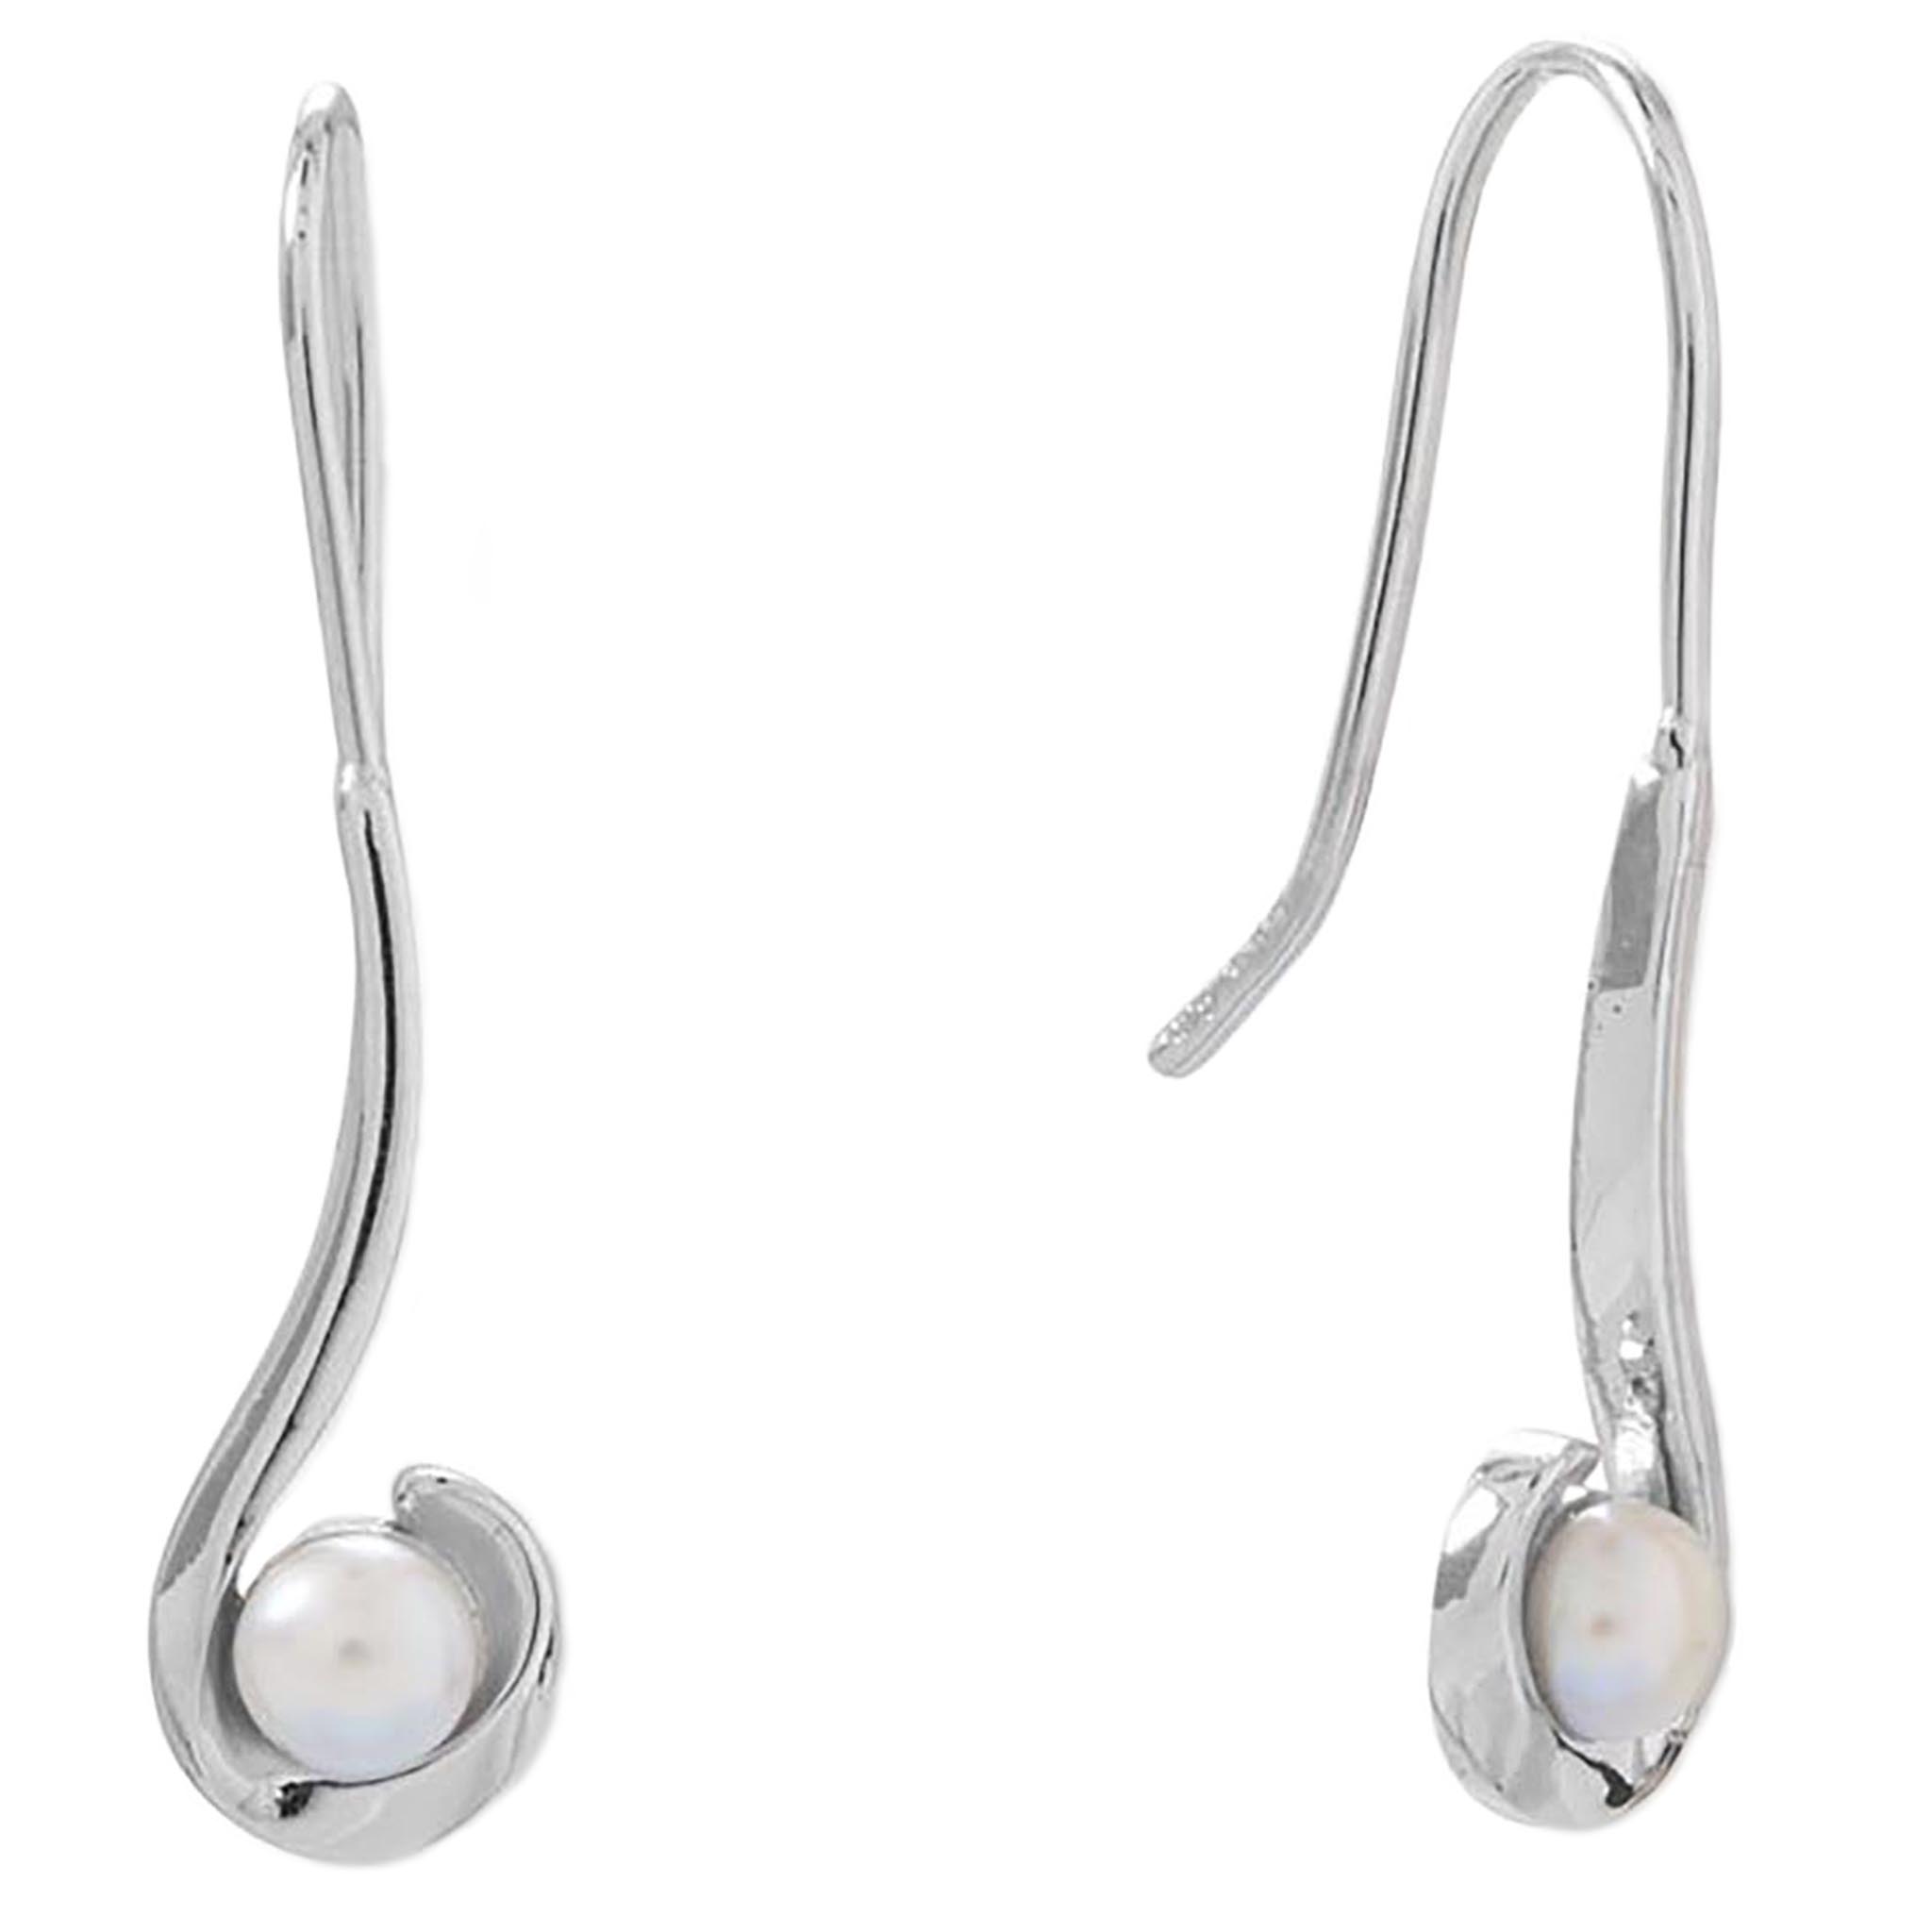 Hook Design Pearl Earrings